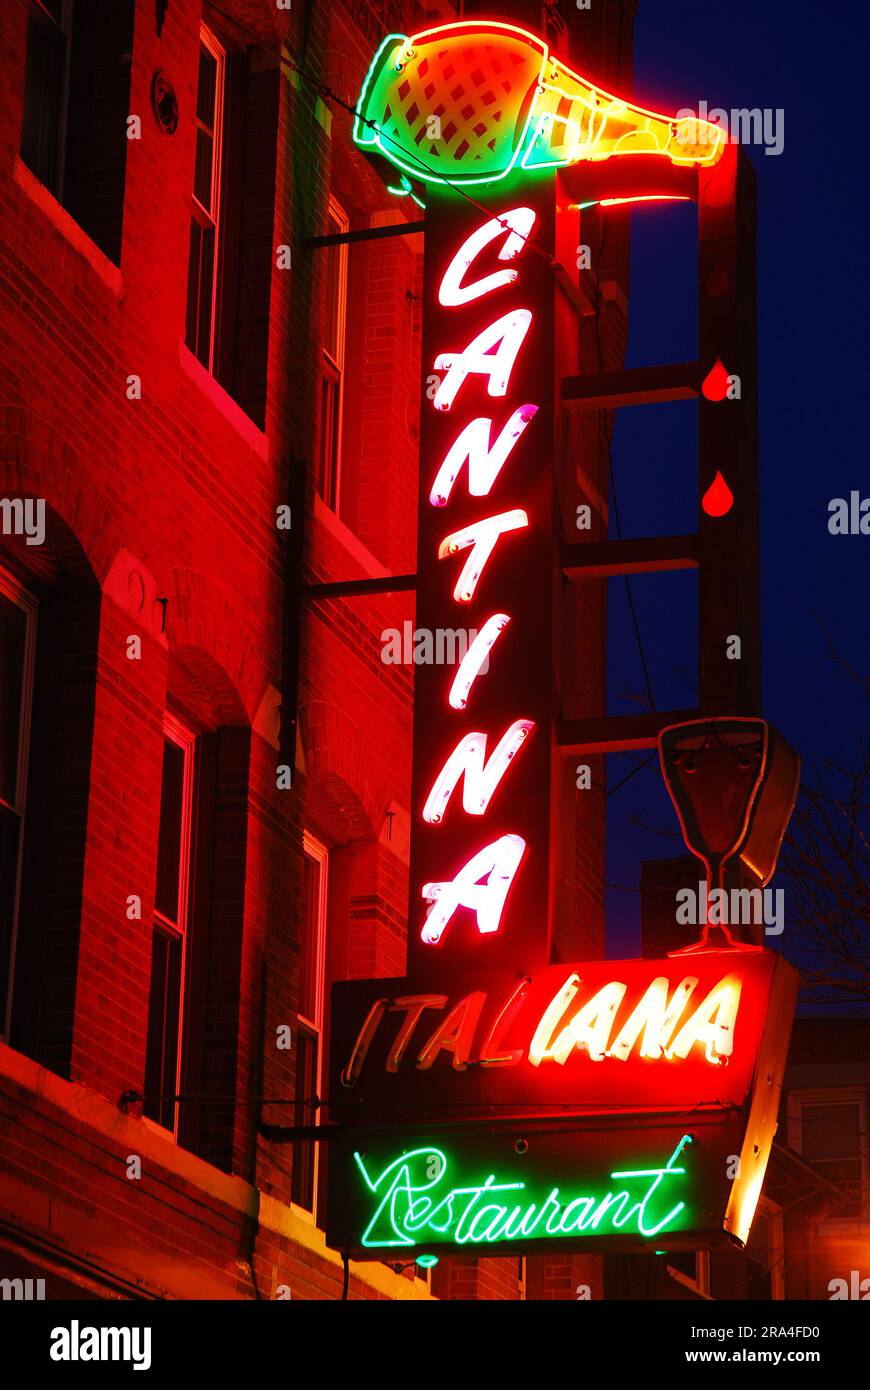 Un grand panneau néon pour un café et un restaurant Cantina illumine une scène nocturne dans le North End de Boston Banque D'Images